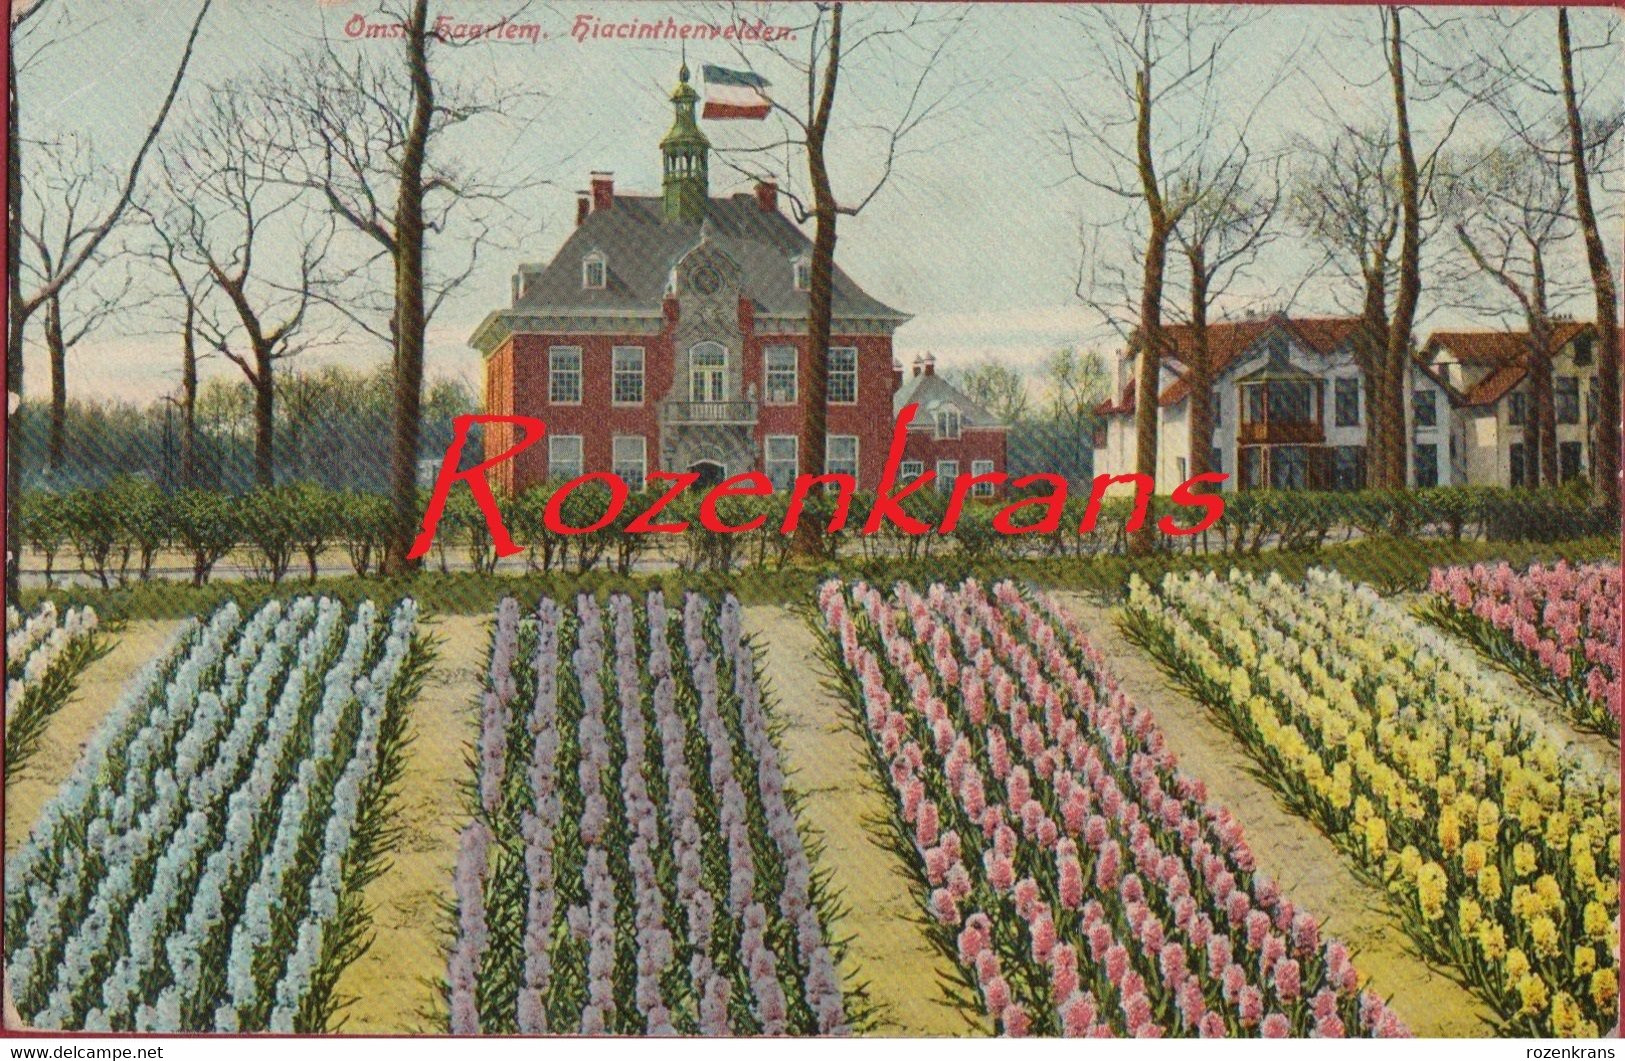 Haarlem Nederland Hiacinthvelden Hiacinth Hiacint Flowers Fleurs Bloemen Bloem Fields (kreukje) - Haarlem